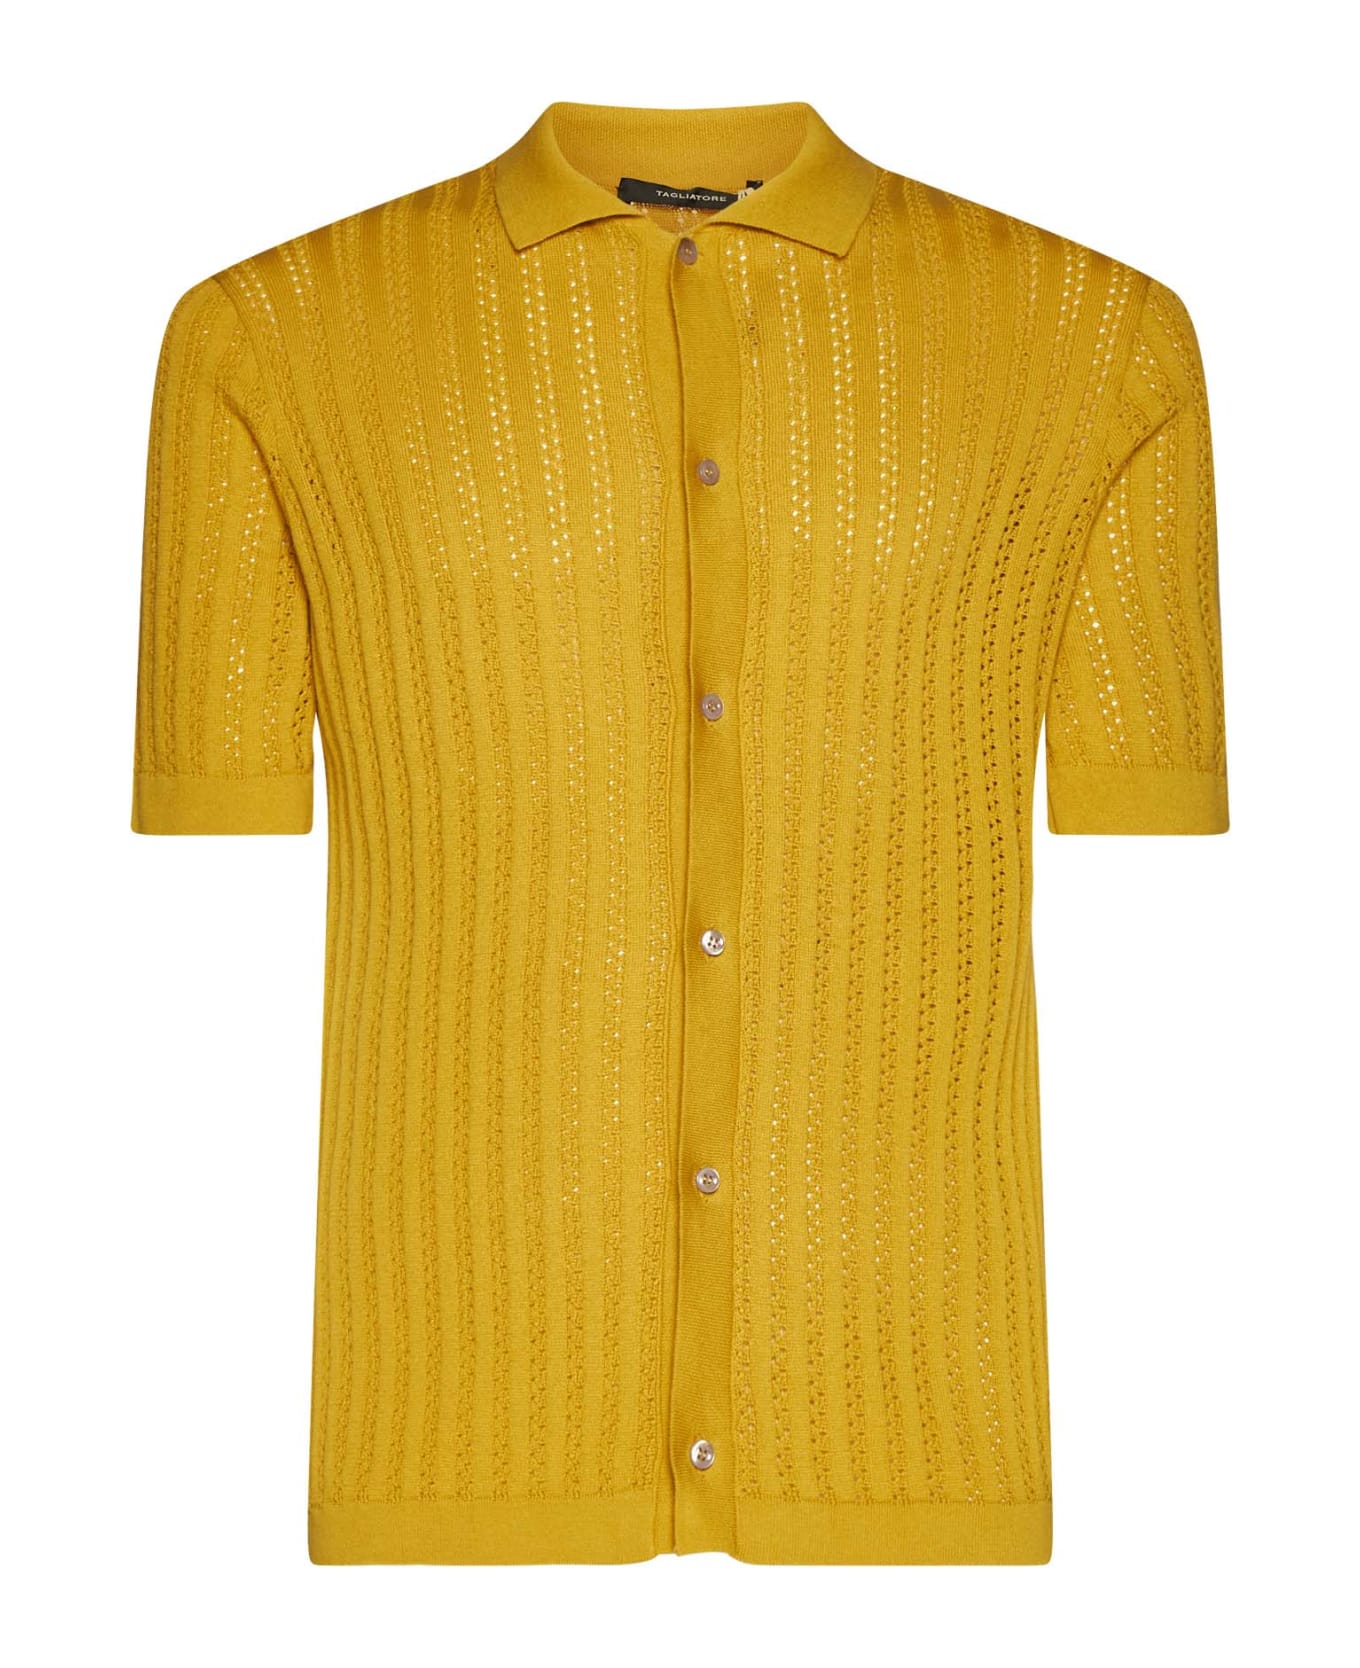 Tagliatore Shirt - Yellow